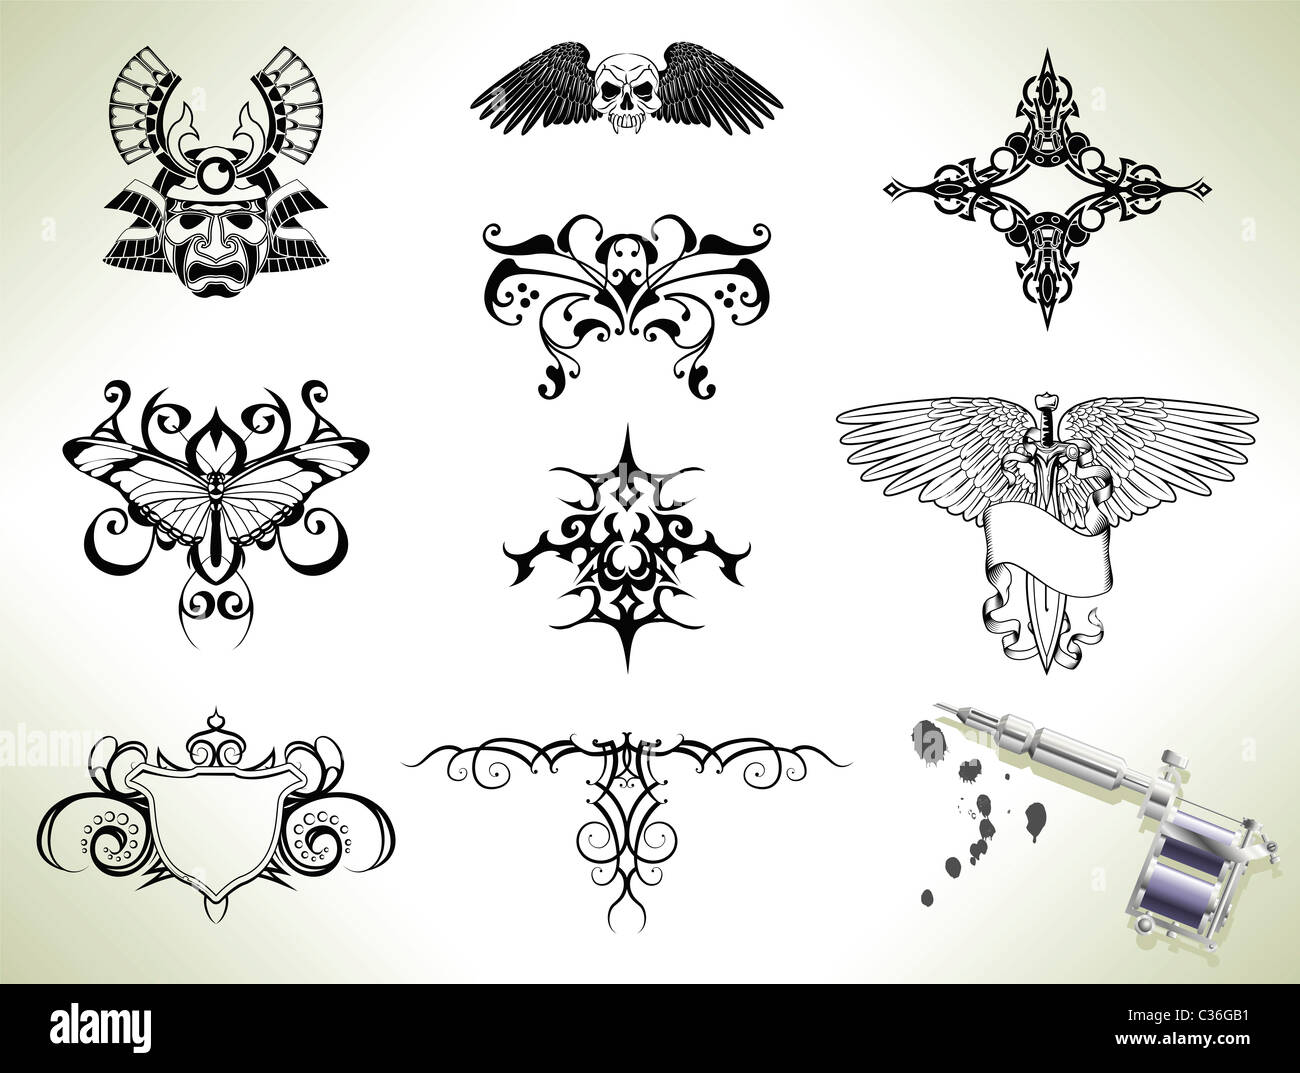 Tatouage-série Éléments de conception flash avec des armes à feu ou d'une machine tatoueurs Banque D'Images